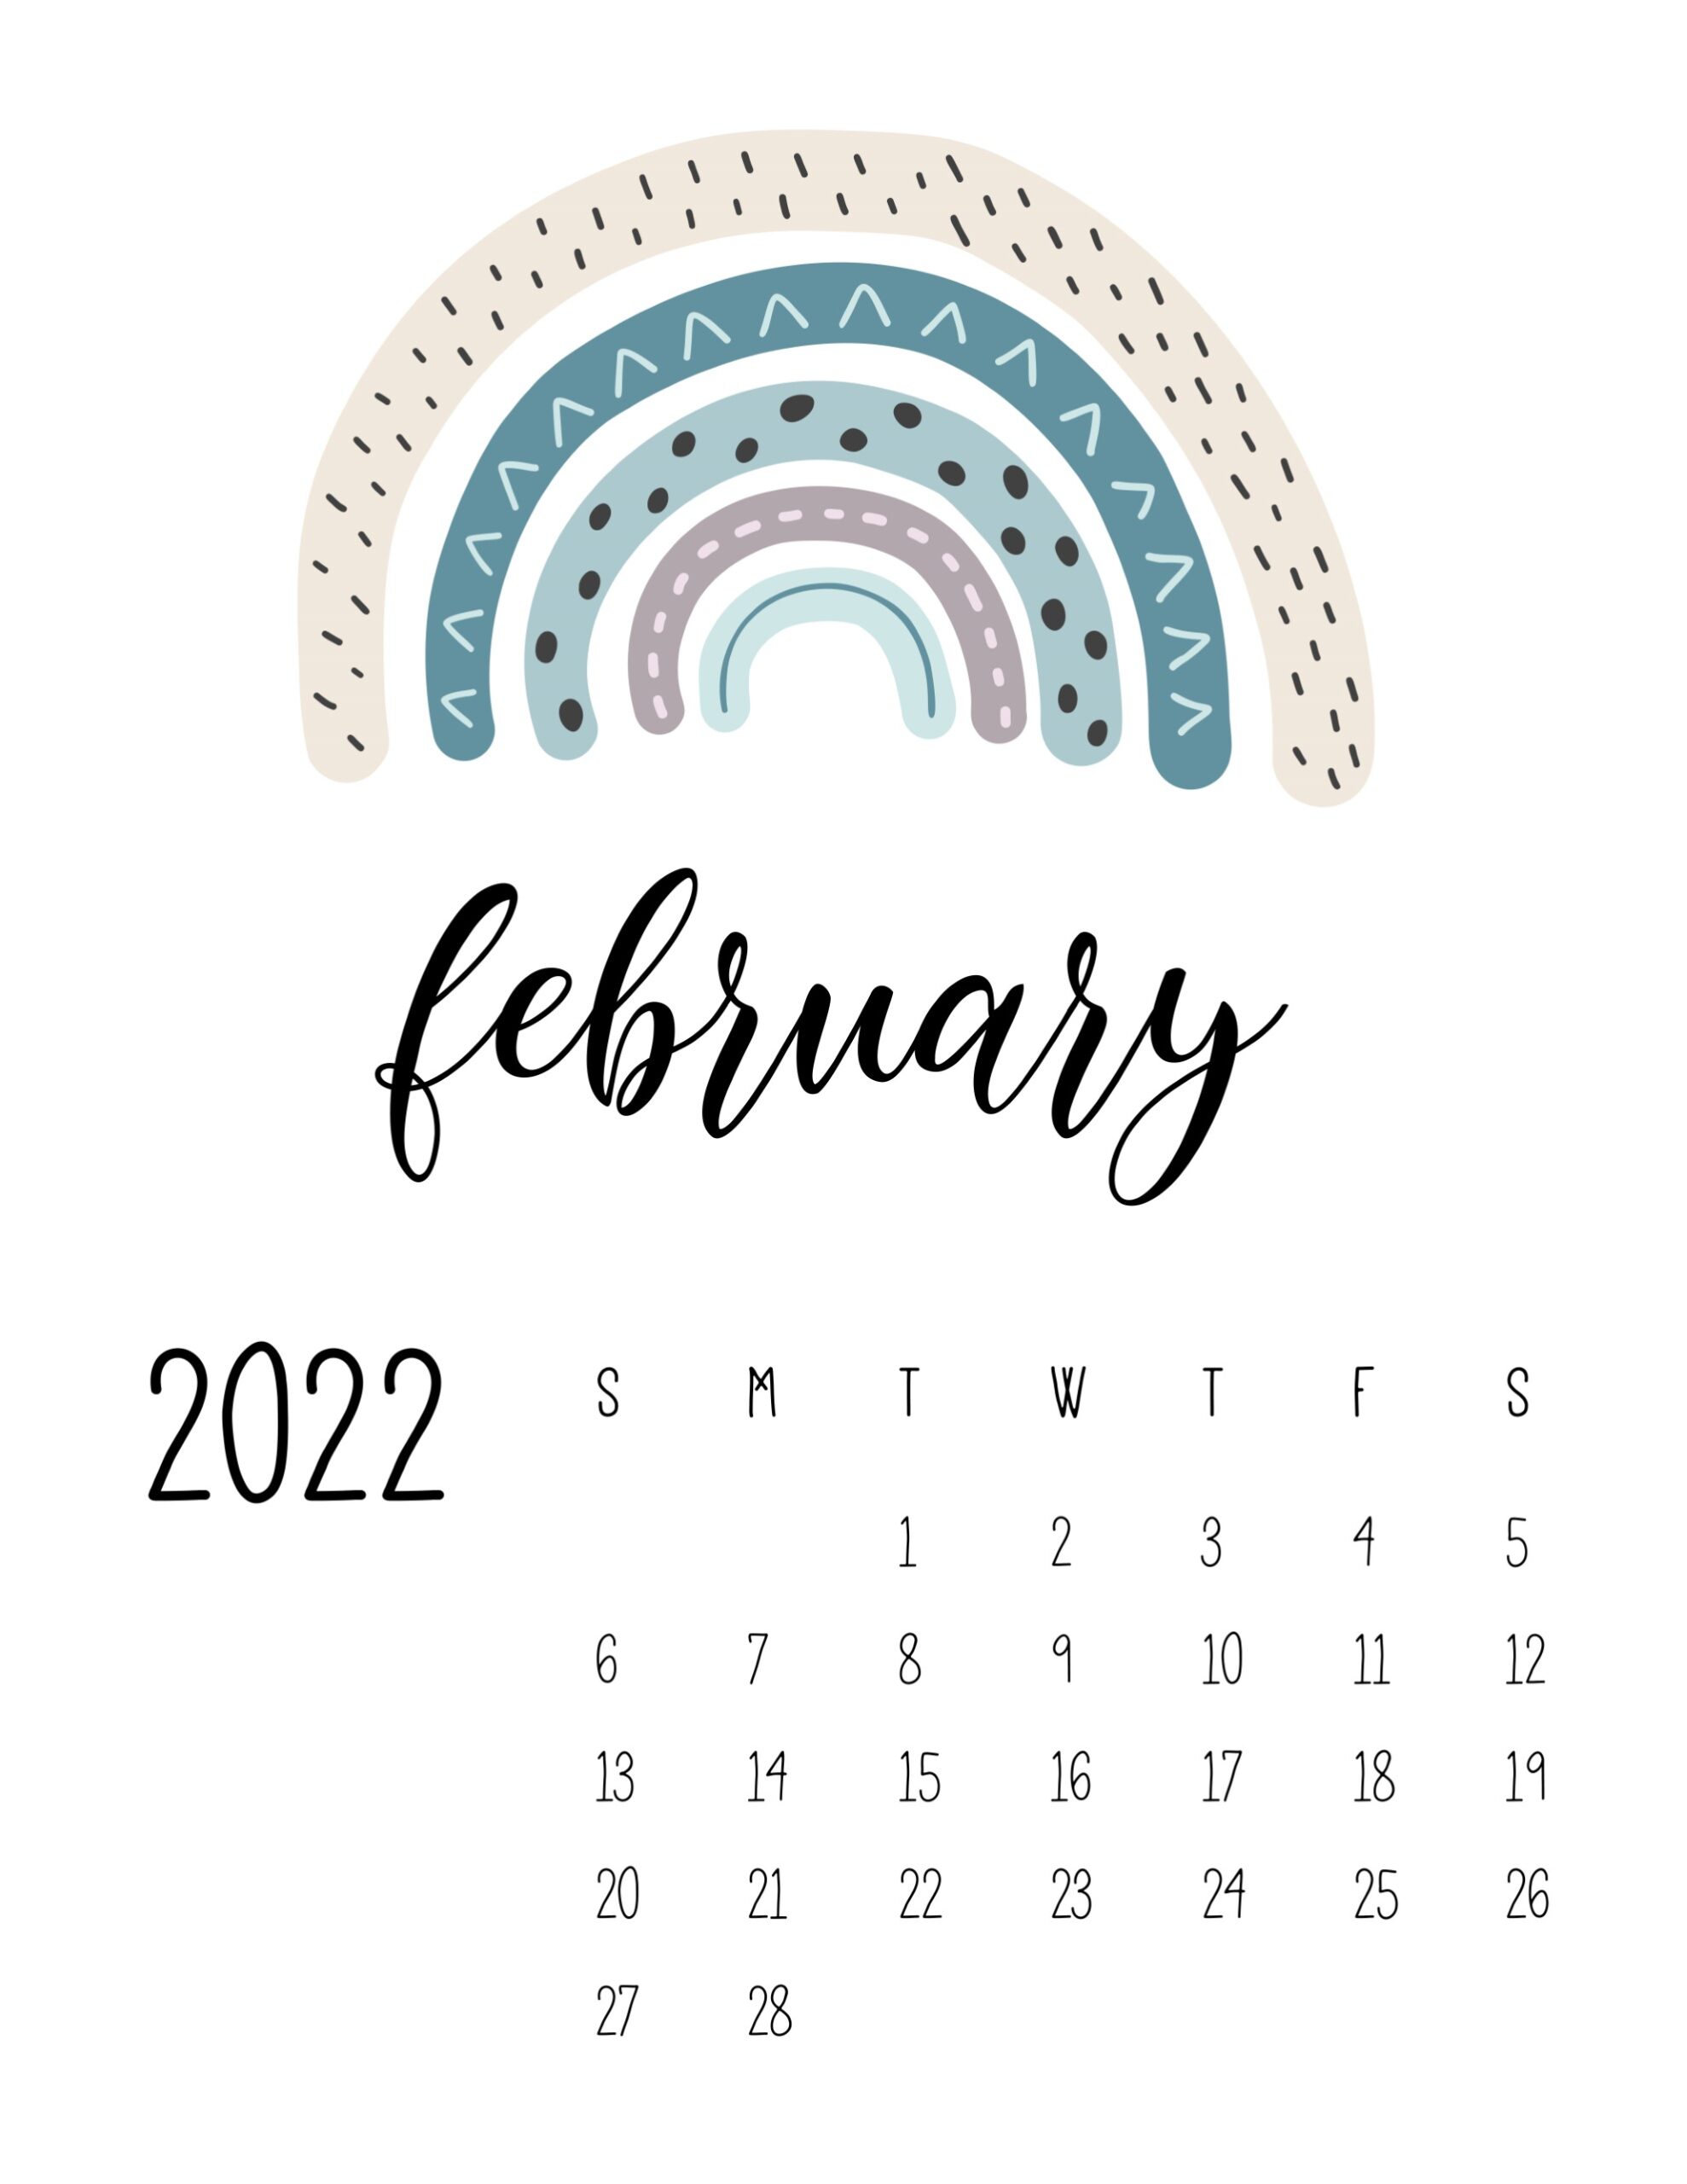 calendario 2022 arco iris fevereiro 1